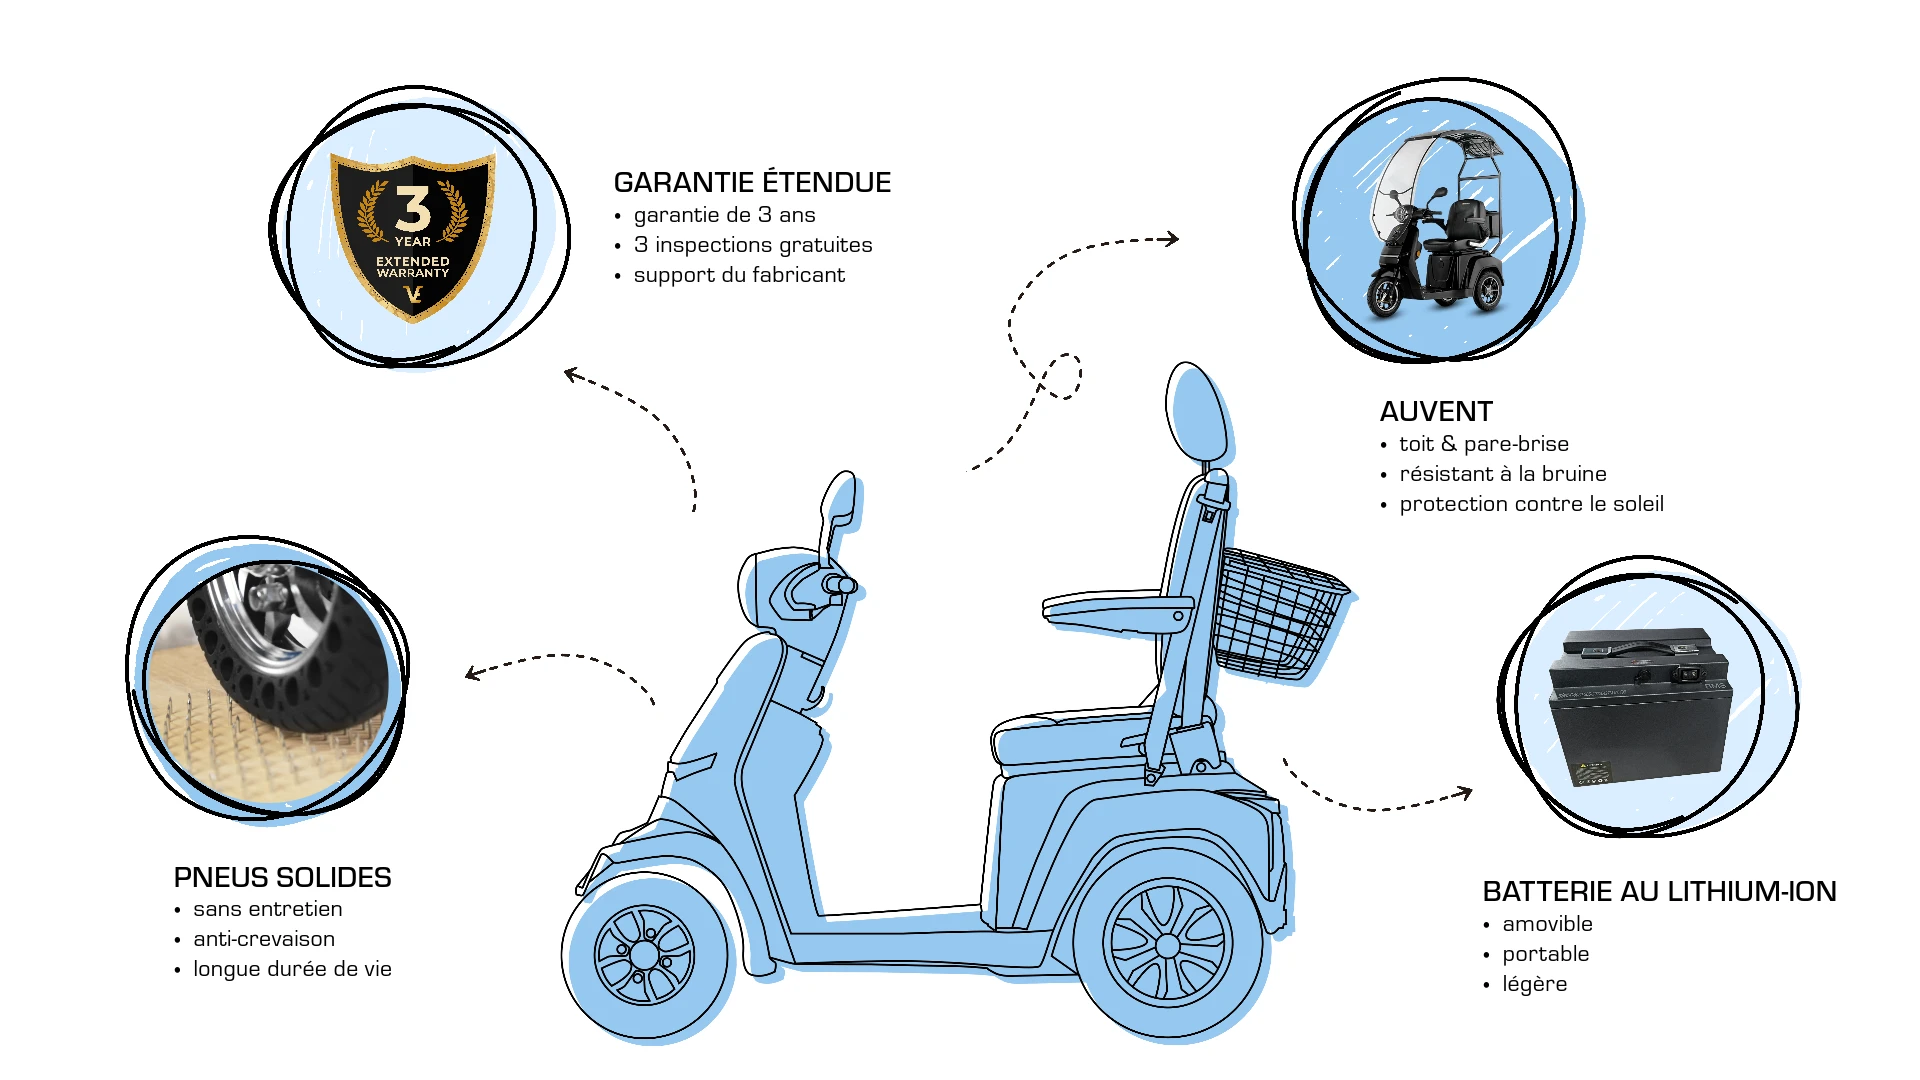 Veleco GRAVIS avec siège capitaine extras, améliorations, pneus solides pour scooter de mobilité, garantie prolongée, batterie lithium-ion